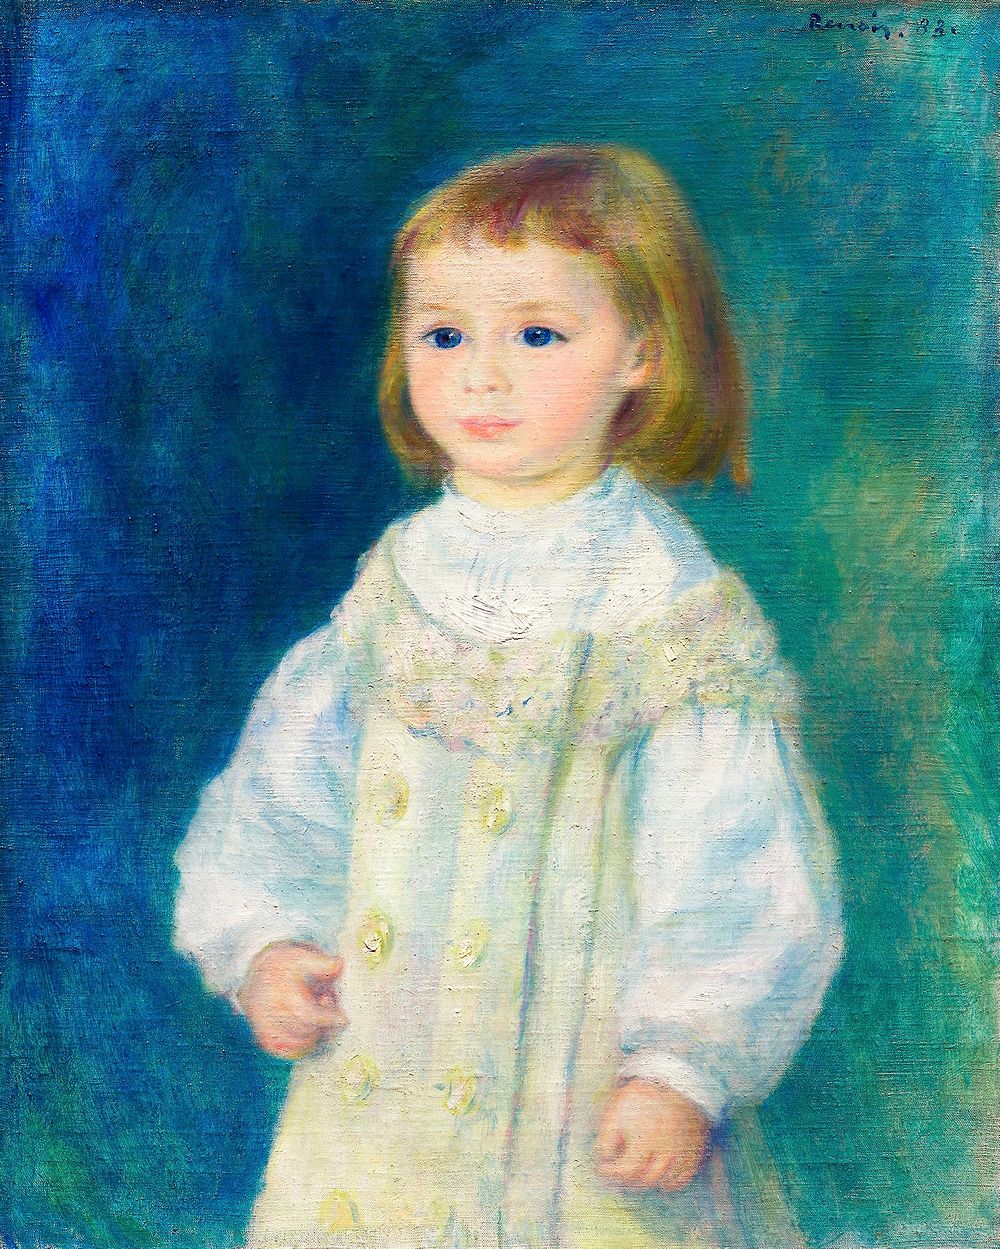 Lucie Berard (Child in White) (1883) by Pierre-Auguste Renoir.